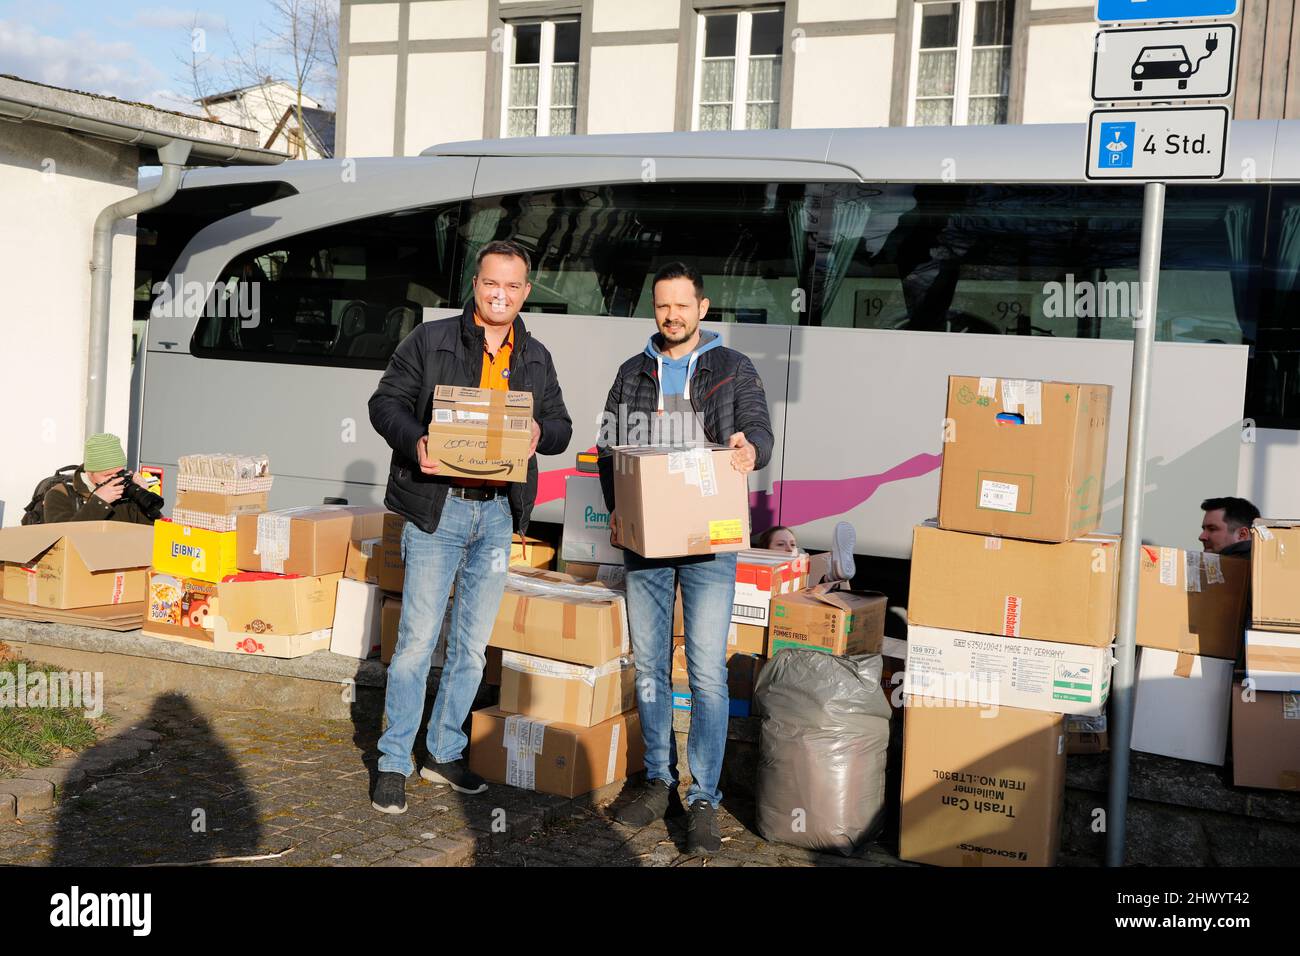 Tourismusunternehmer Andreas Thomas und Metallunternehmer Martin Düring haben den Hilfskonvoi organisiert - Zwei Reisebusse aus der Region Bautzen bri Stock Photo